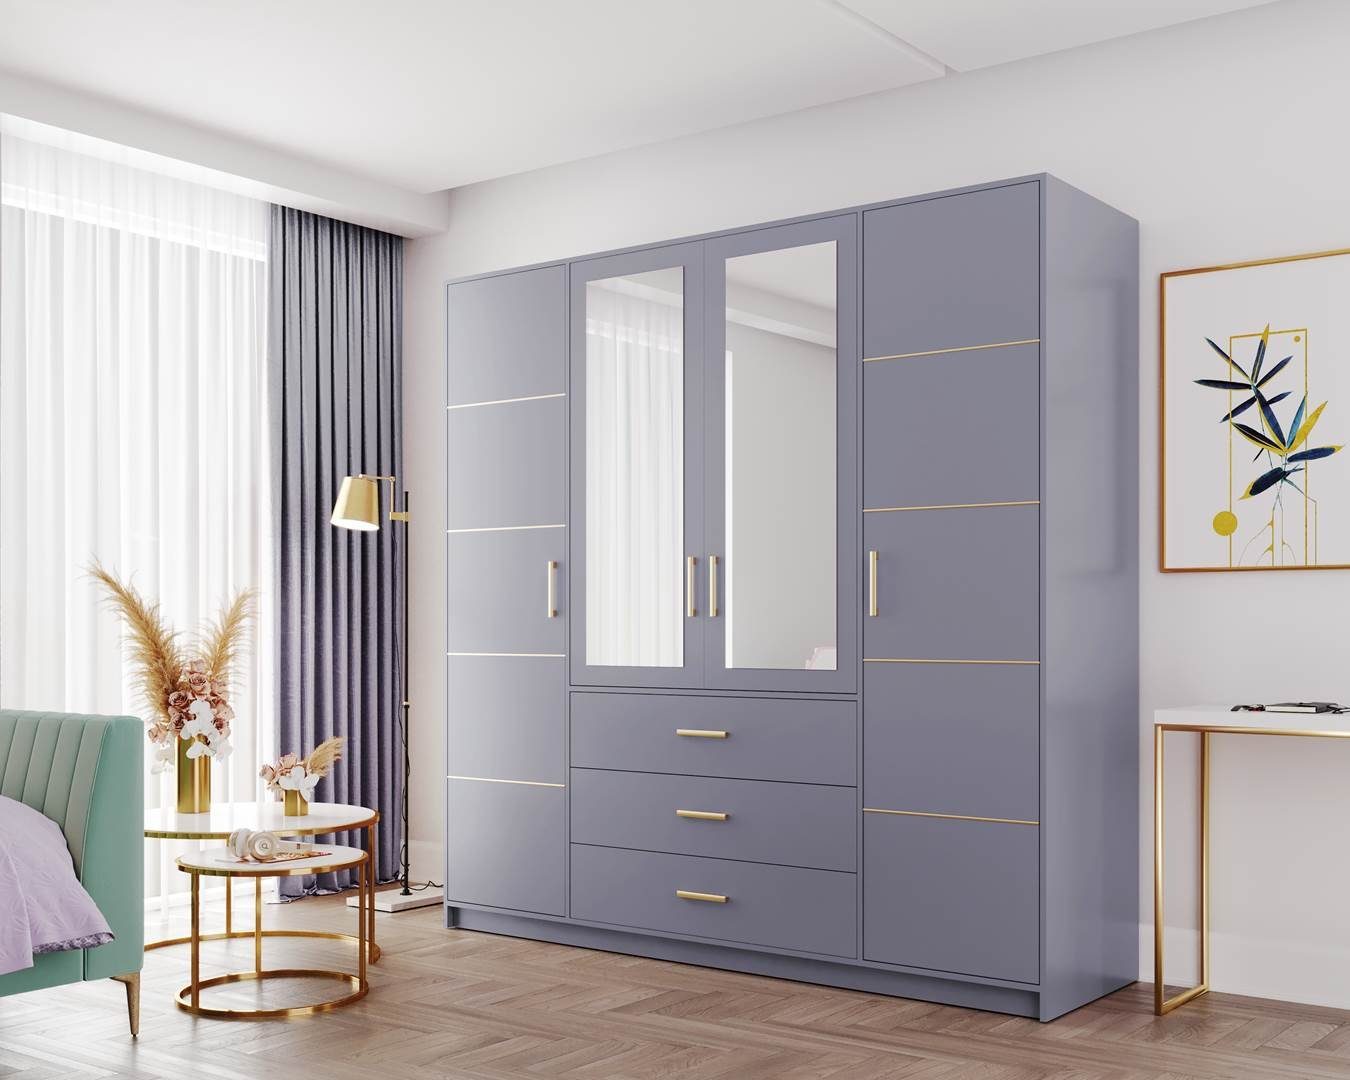 D4 3 Sideboard Kleiderschrank mit Beautysofa türen mit 4 Schubladen Garderobenschrank Spiegel, blau mit BALI Kleiderschrank